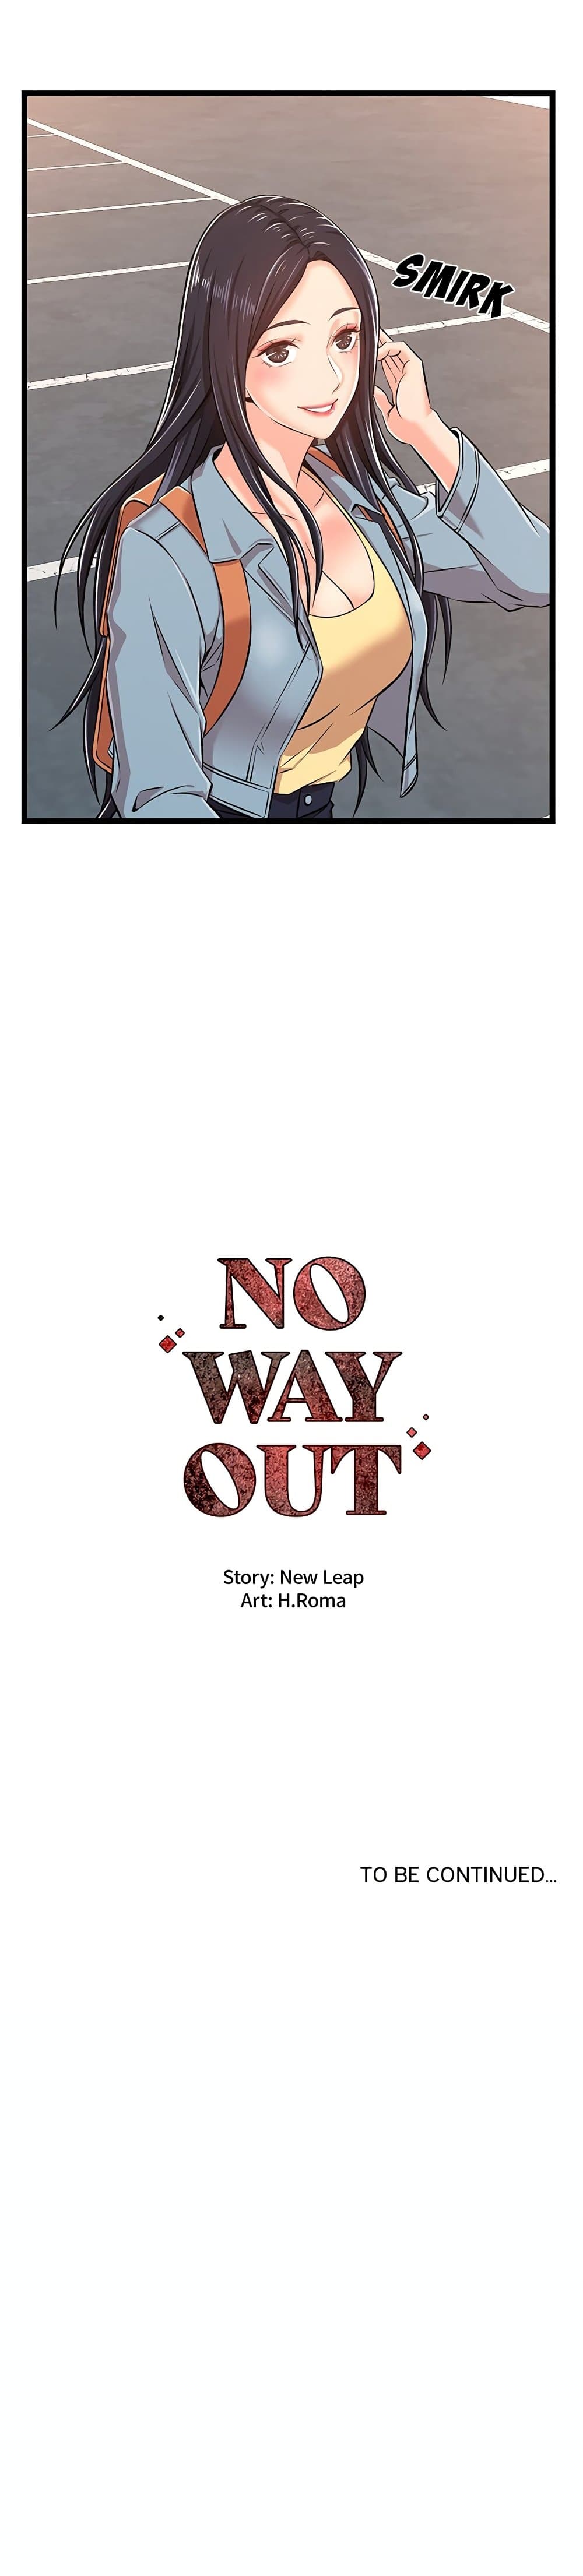 No Way Out 2-2